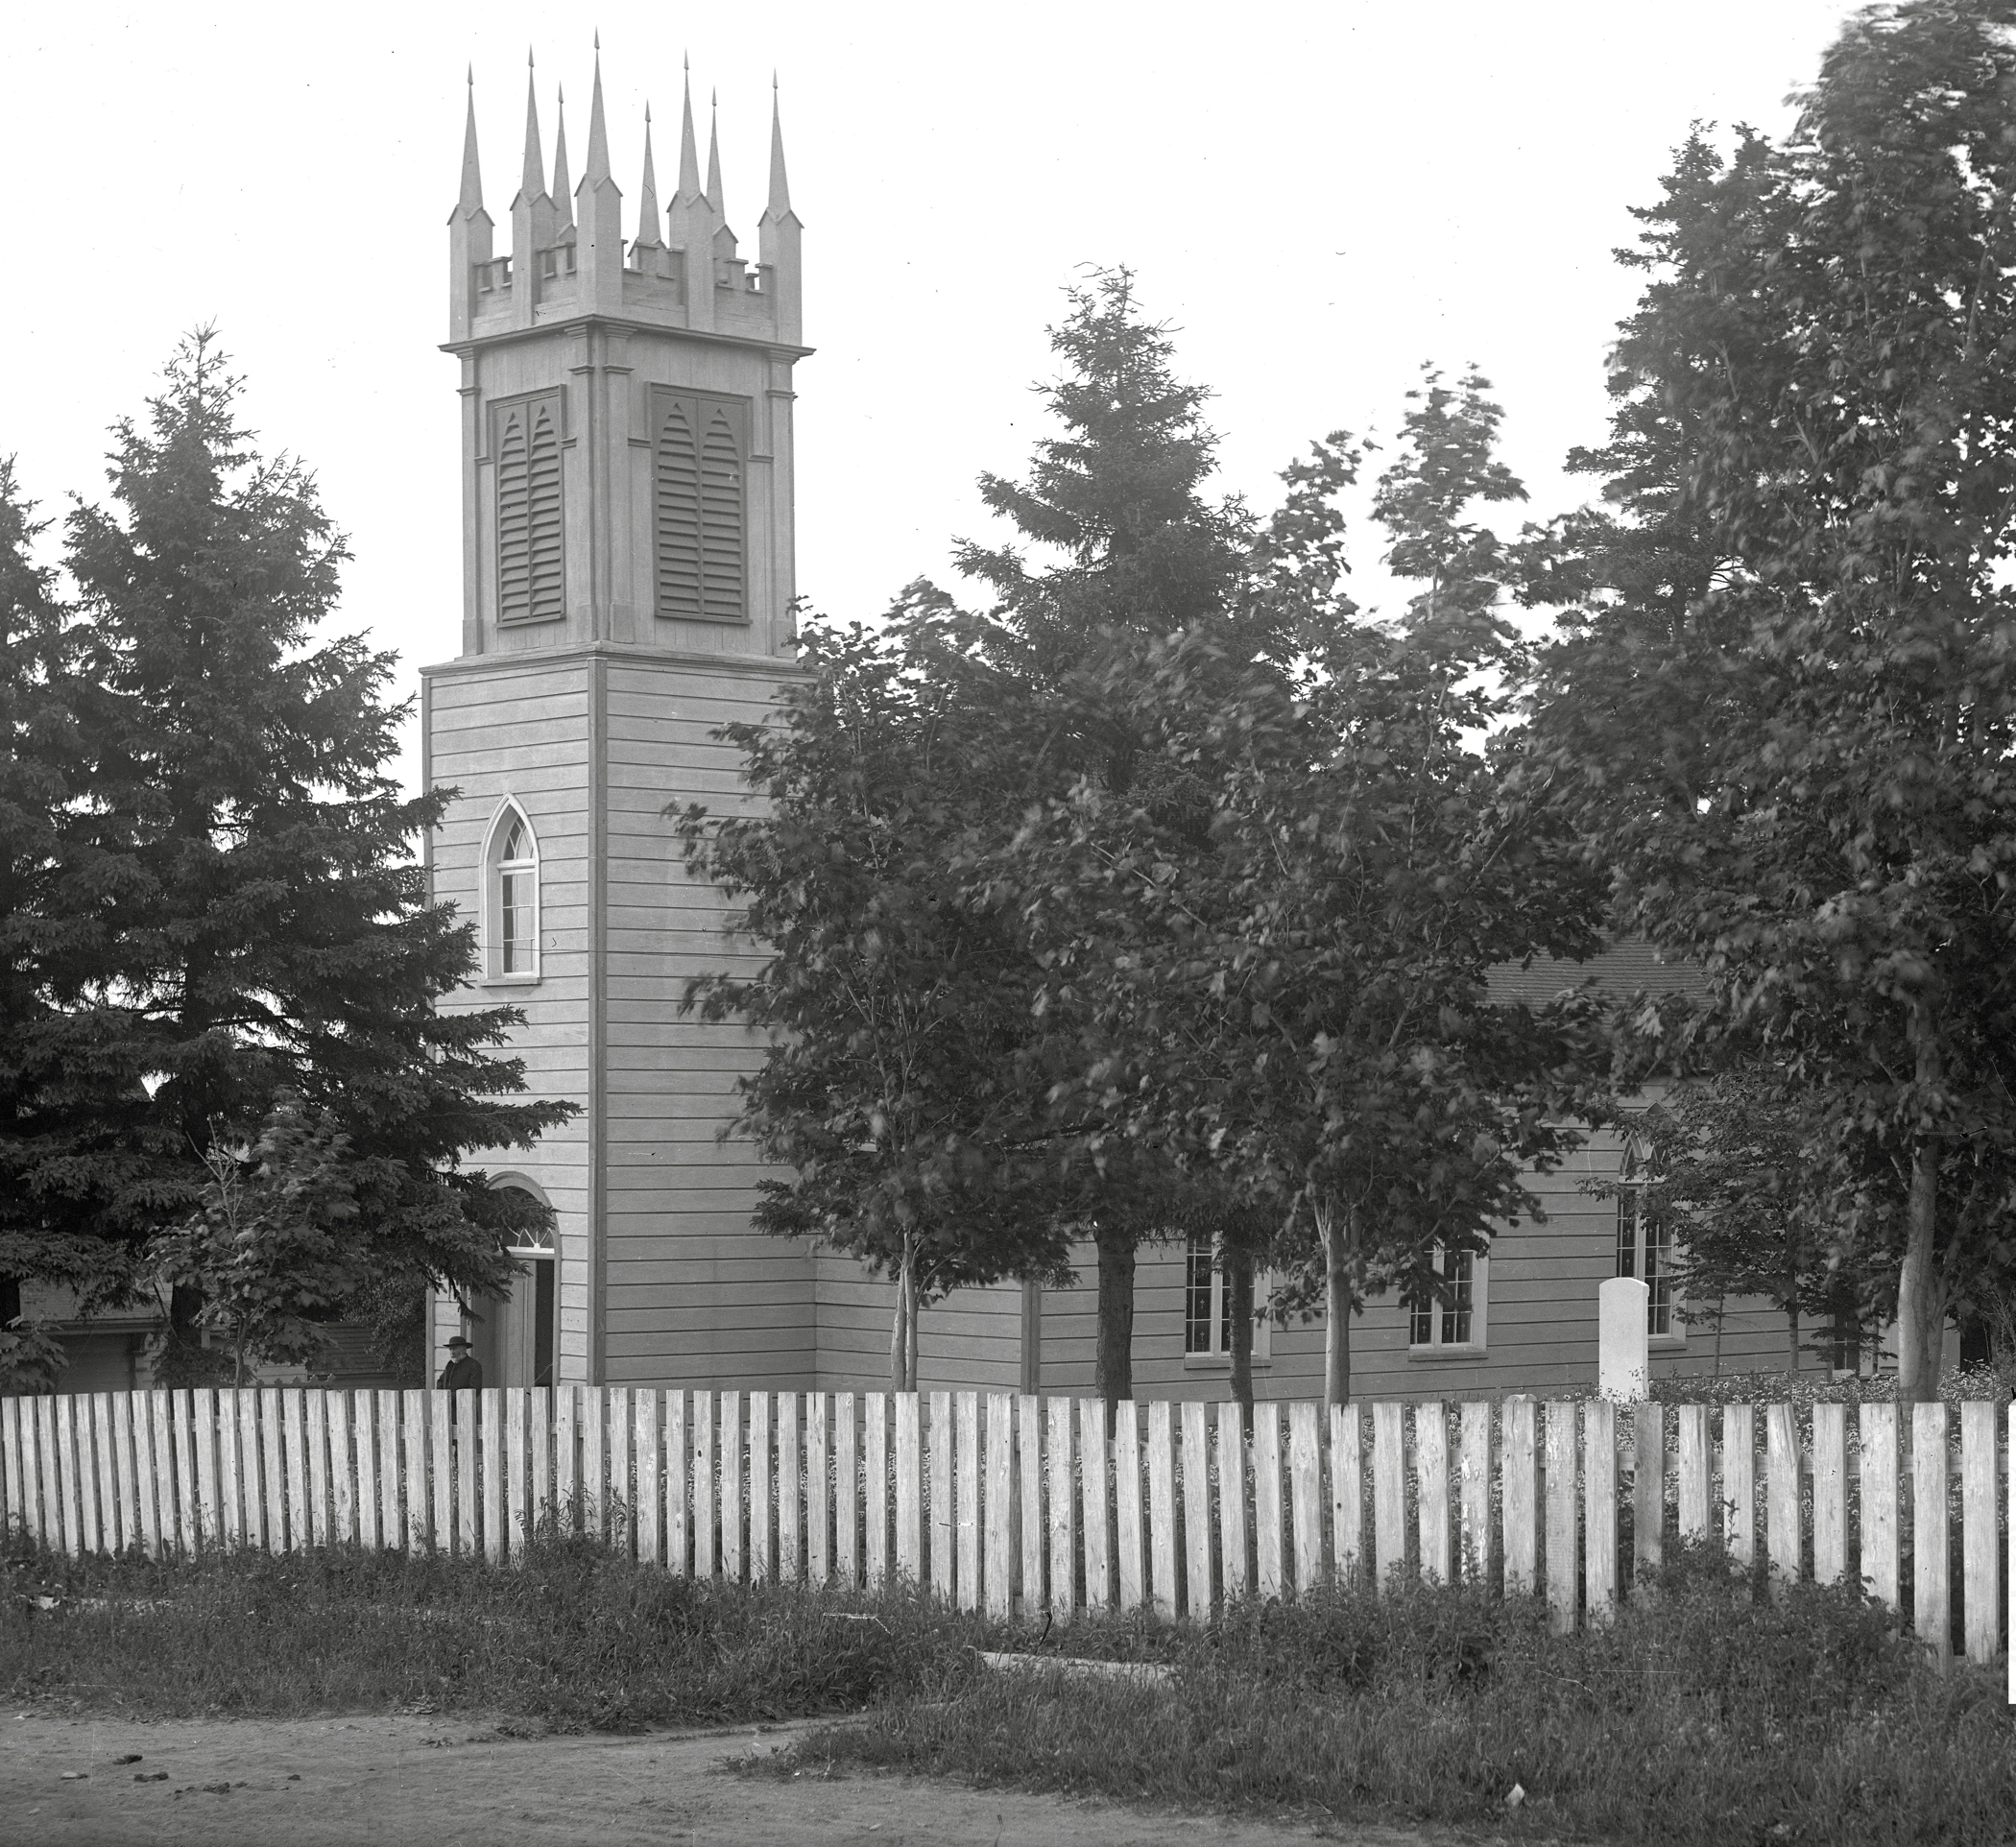 Photo noir et blanc d'une vieille église en bois, église anglicane St. Bartholomew, surmontée d’un clocher en façade; un prêtre sortant de son entrée principale. Au premier plan, une clôture en bois sur le fronton de l'église, derrière laquelle se dressent de grands arbres.